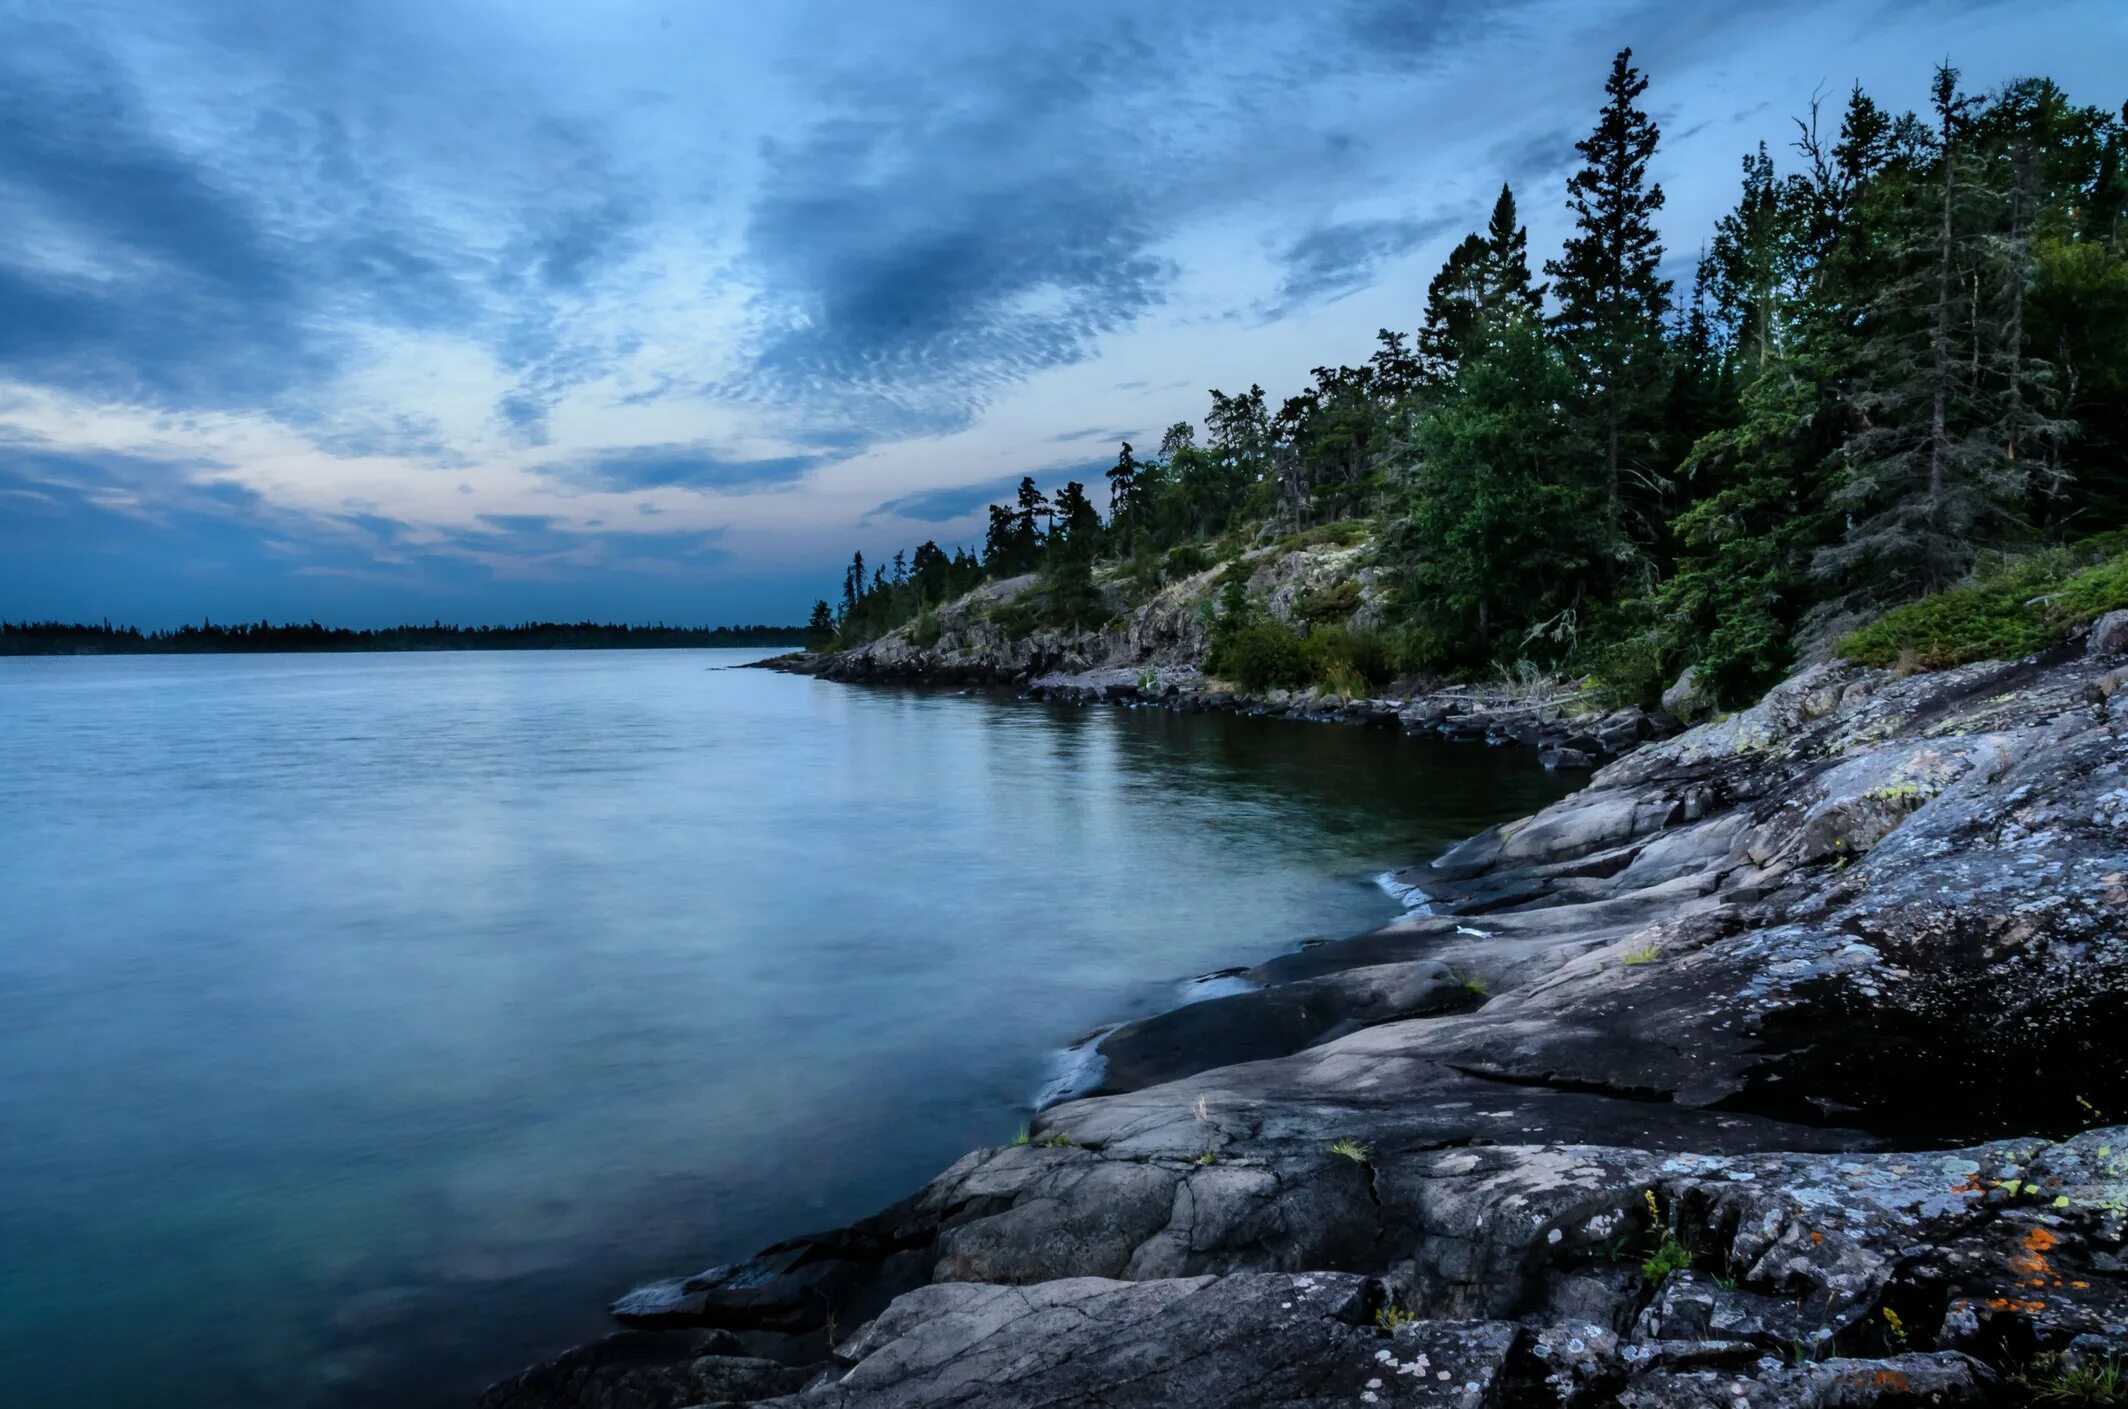 Верхнее озеро (Lake Superior). Канада. Озеро сьюпериор Канада. Великие американские озёра верхнее Гурон Мичиган Эри Онтарио. Озеро Онтарио Северная Америка. Самое восточное из великих озер 7